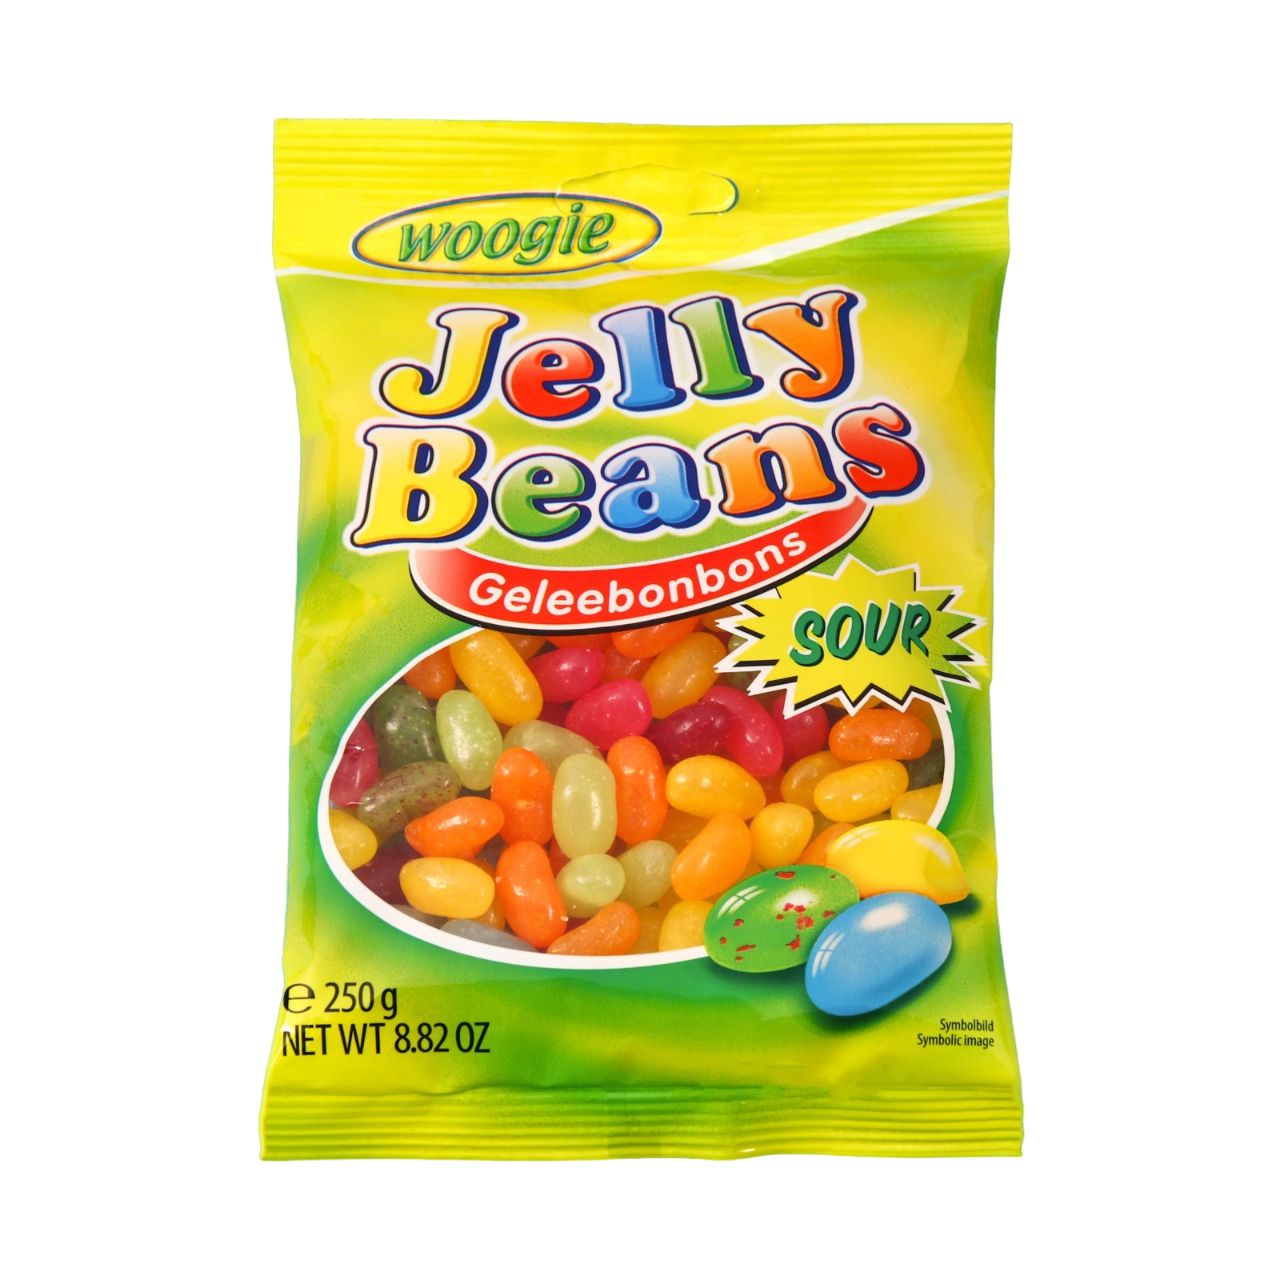 Бобы желе Woogie Jelly Beans кислые, 250 г